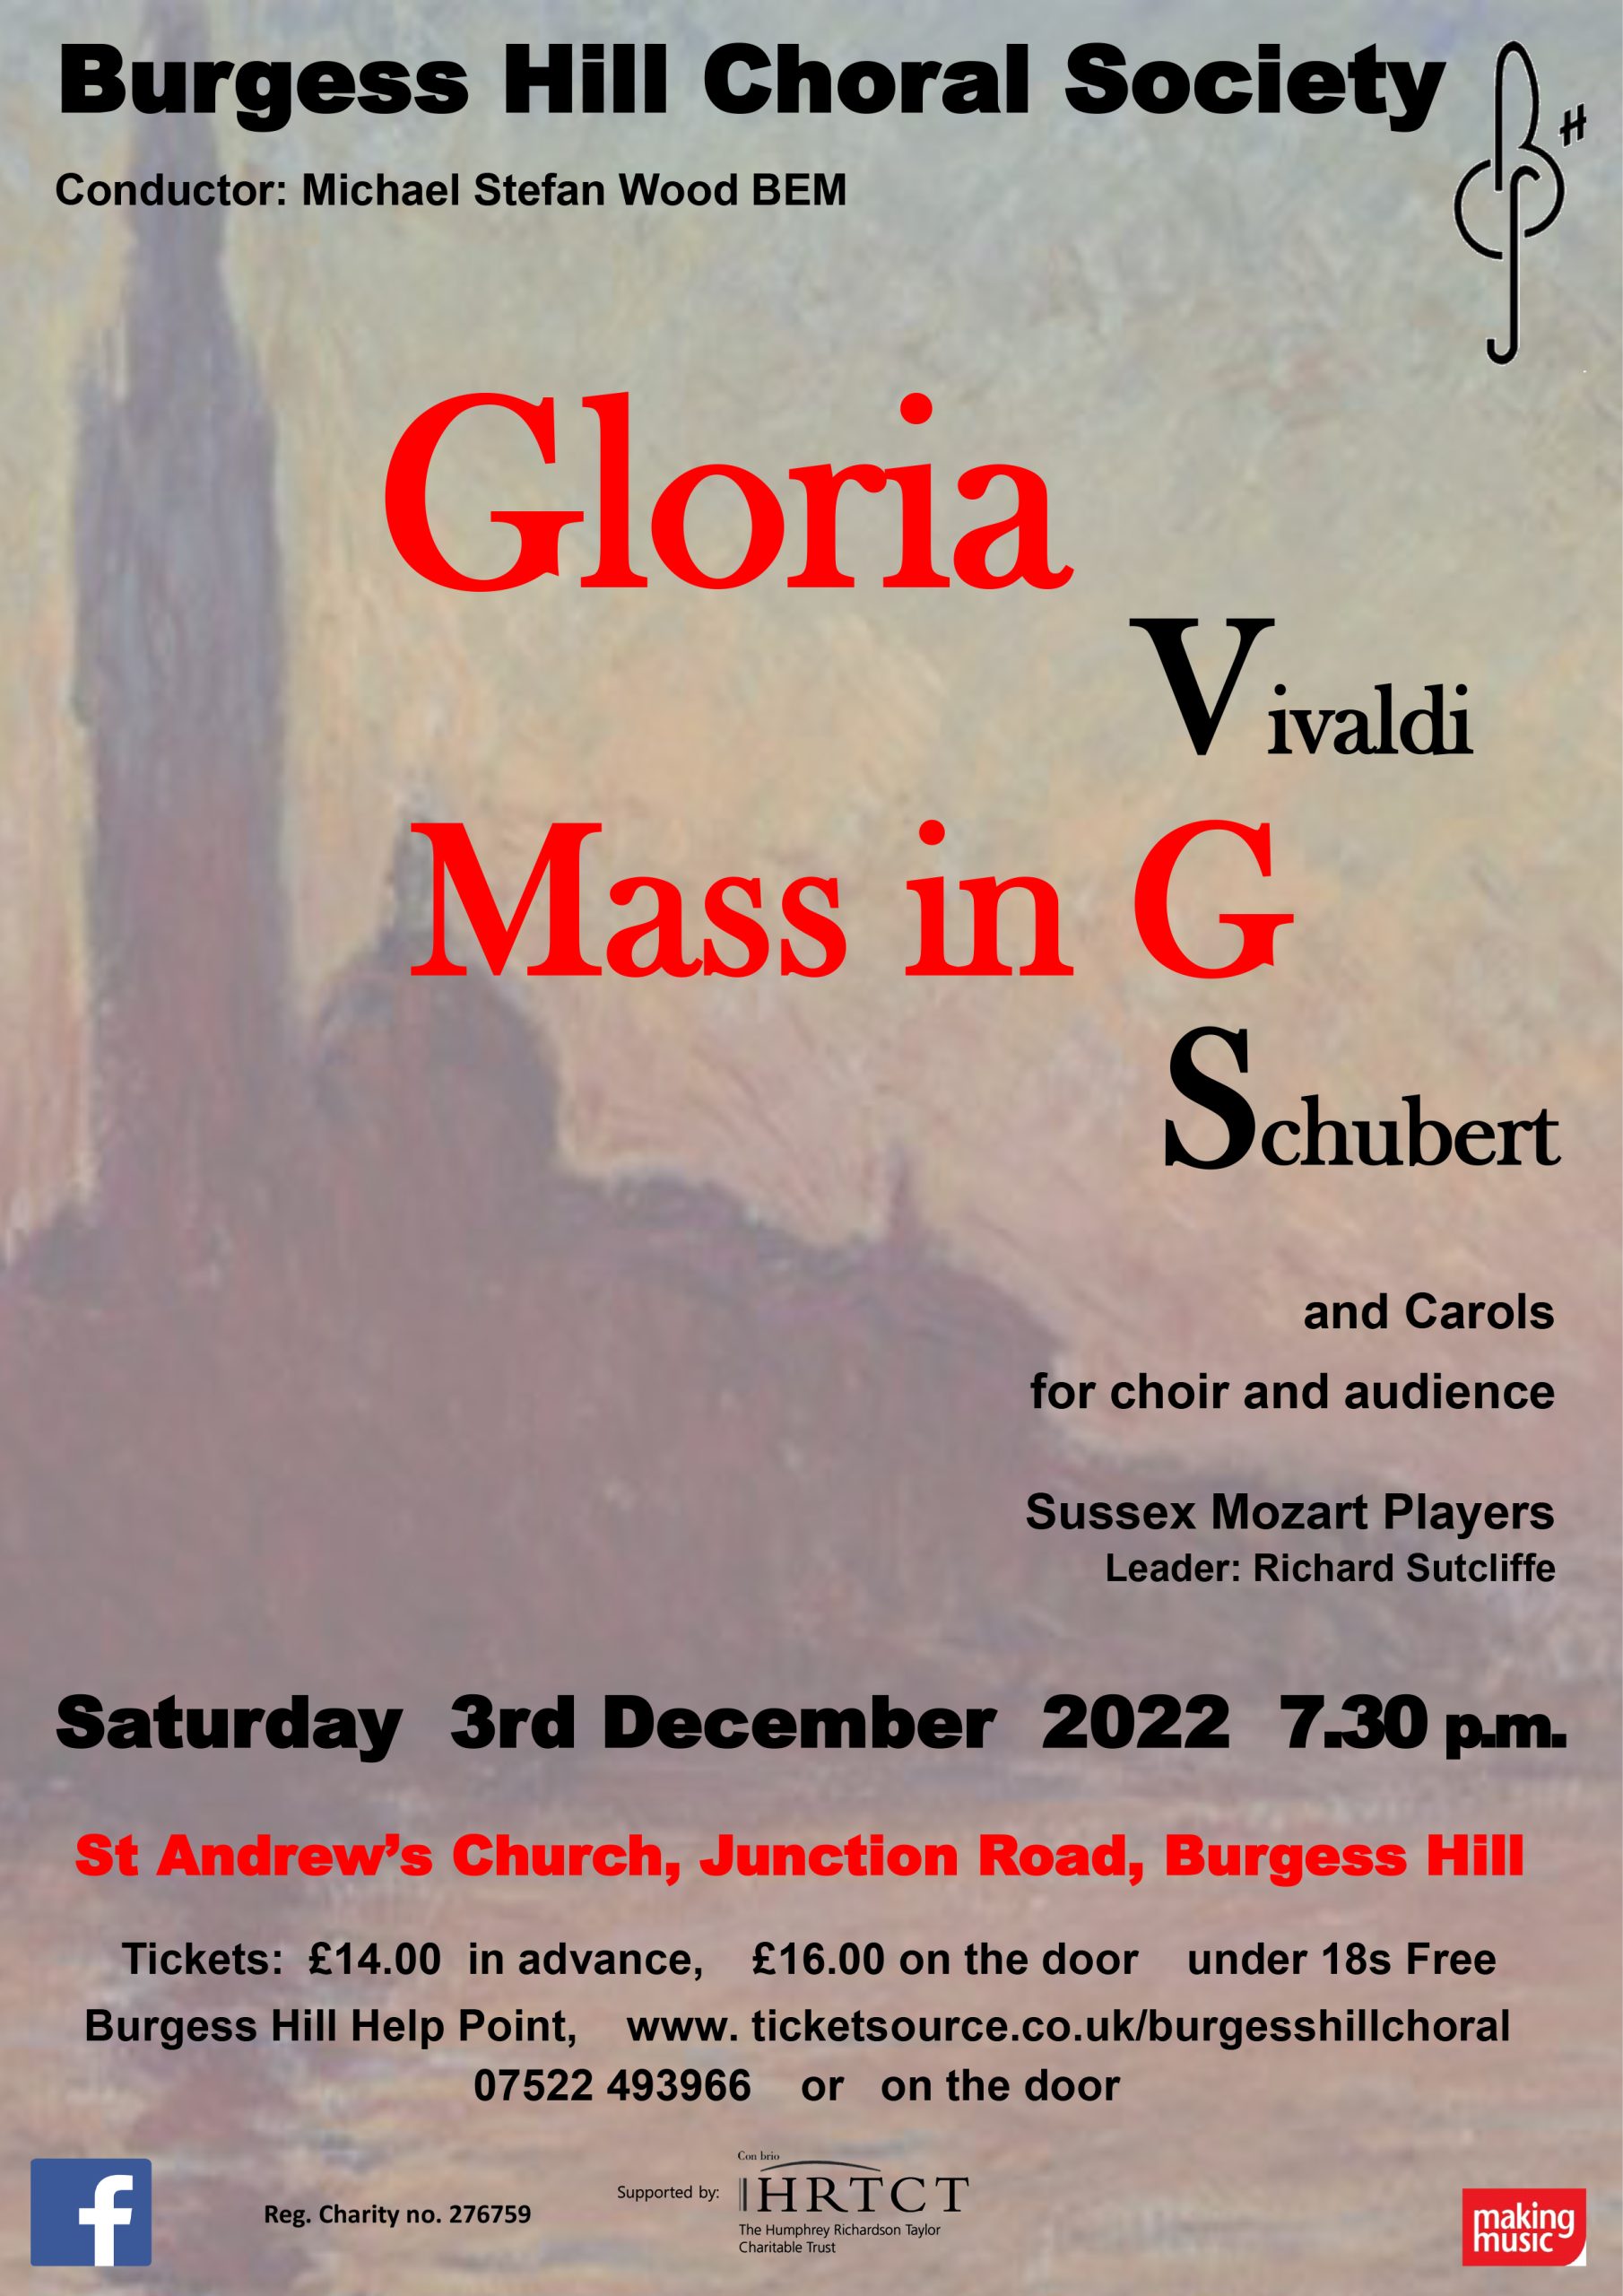 Gloria Vivaldi Mass in G Schubert